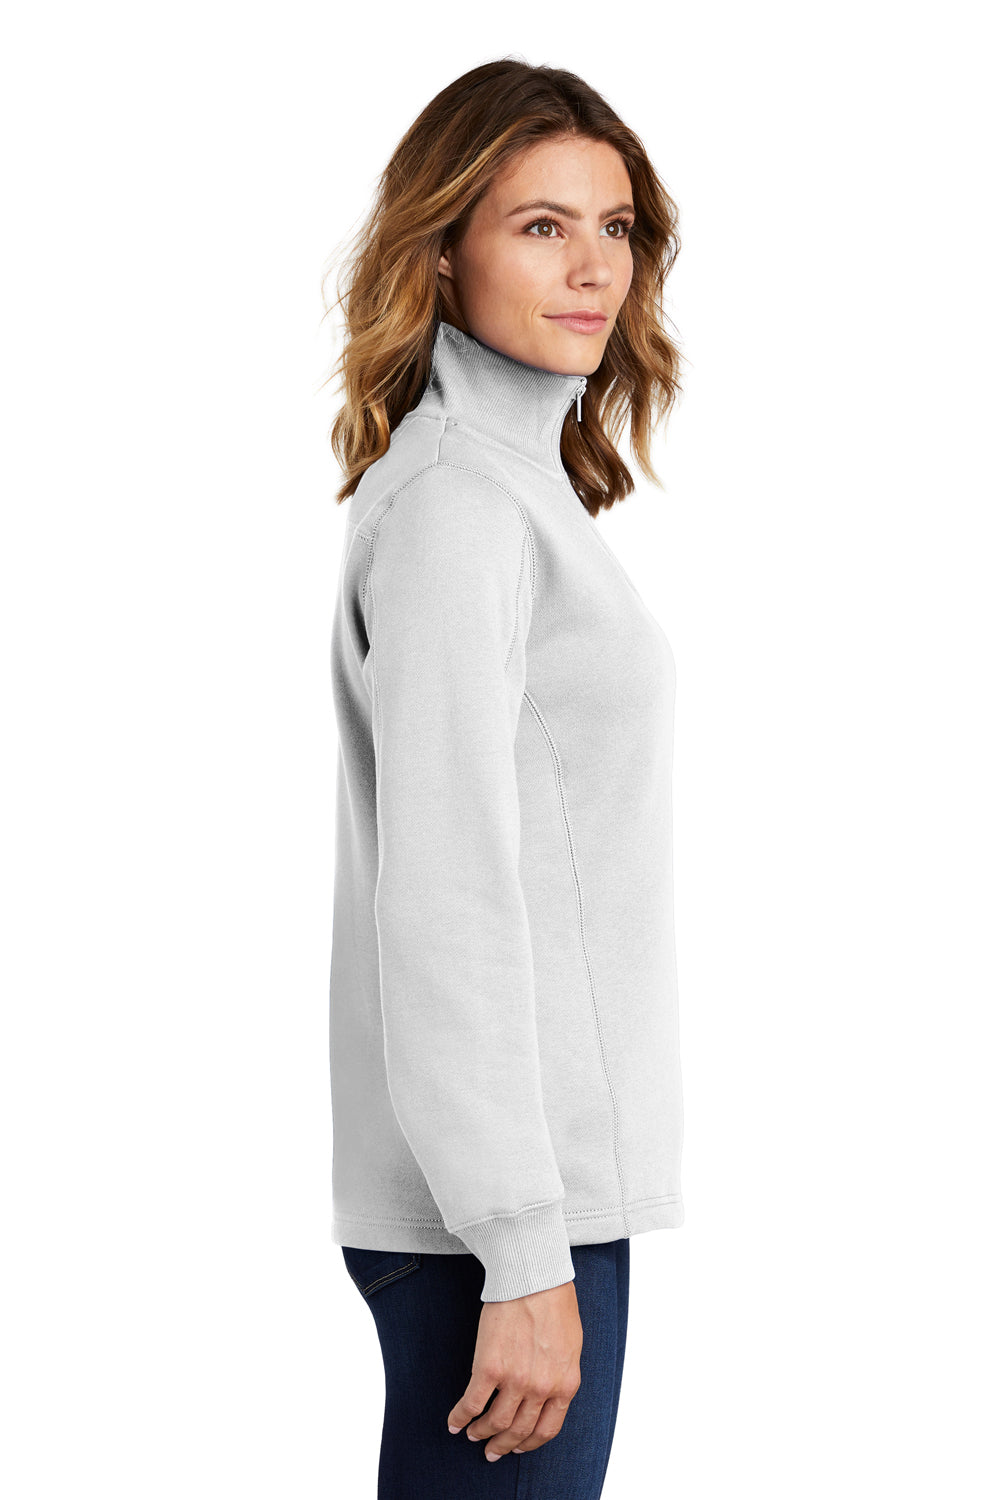 Sport-Tek LST253 Womens Fleece 1/4 Zip Sweatshirt White Side